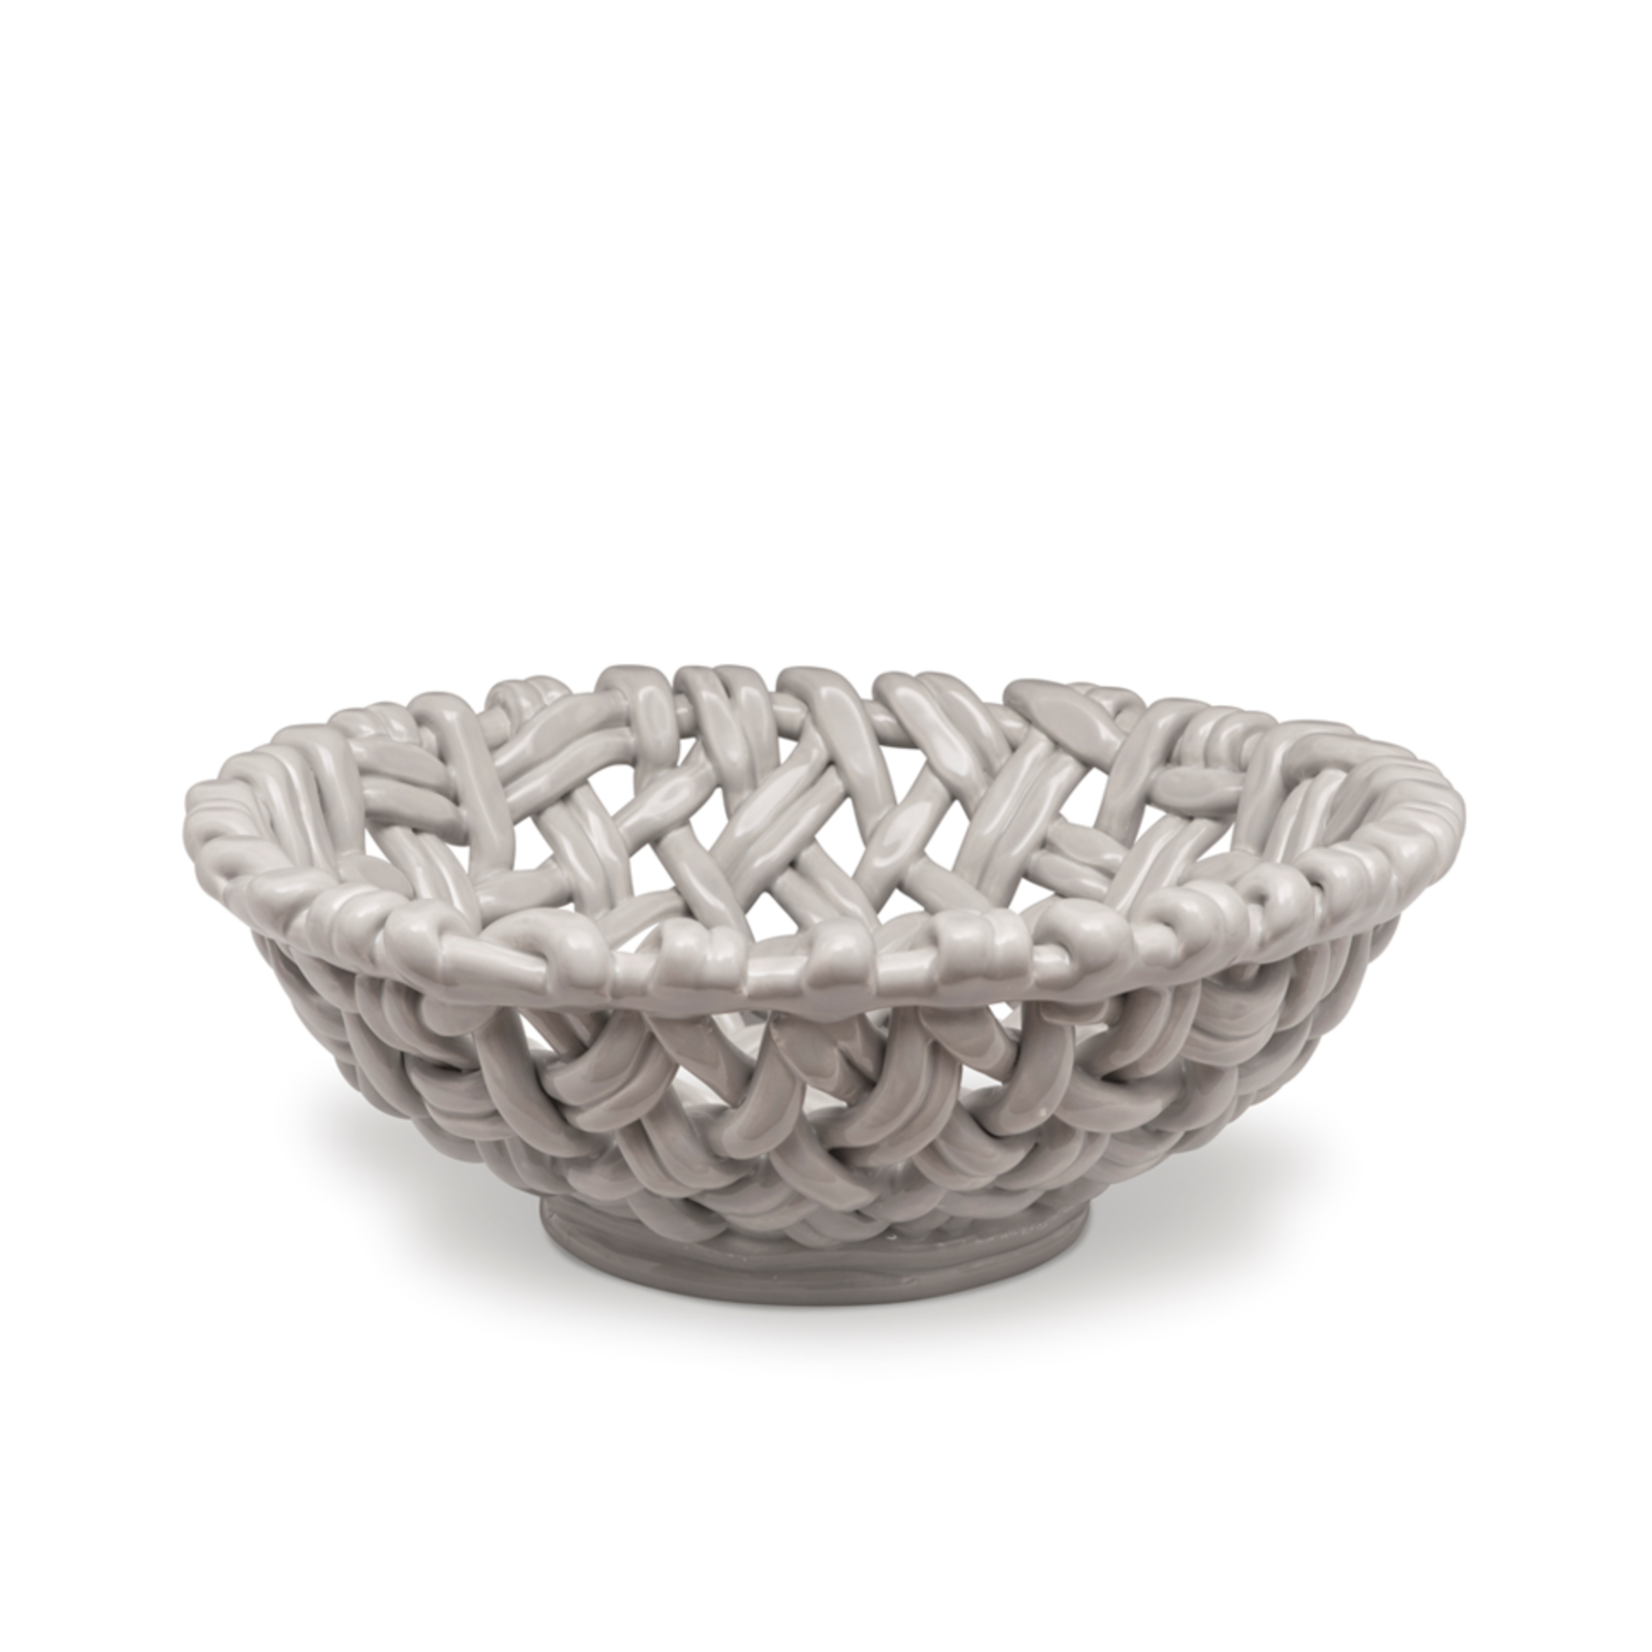 Skyros Designs Hand Woven Round Basket - Greige